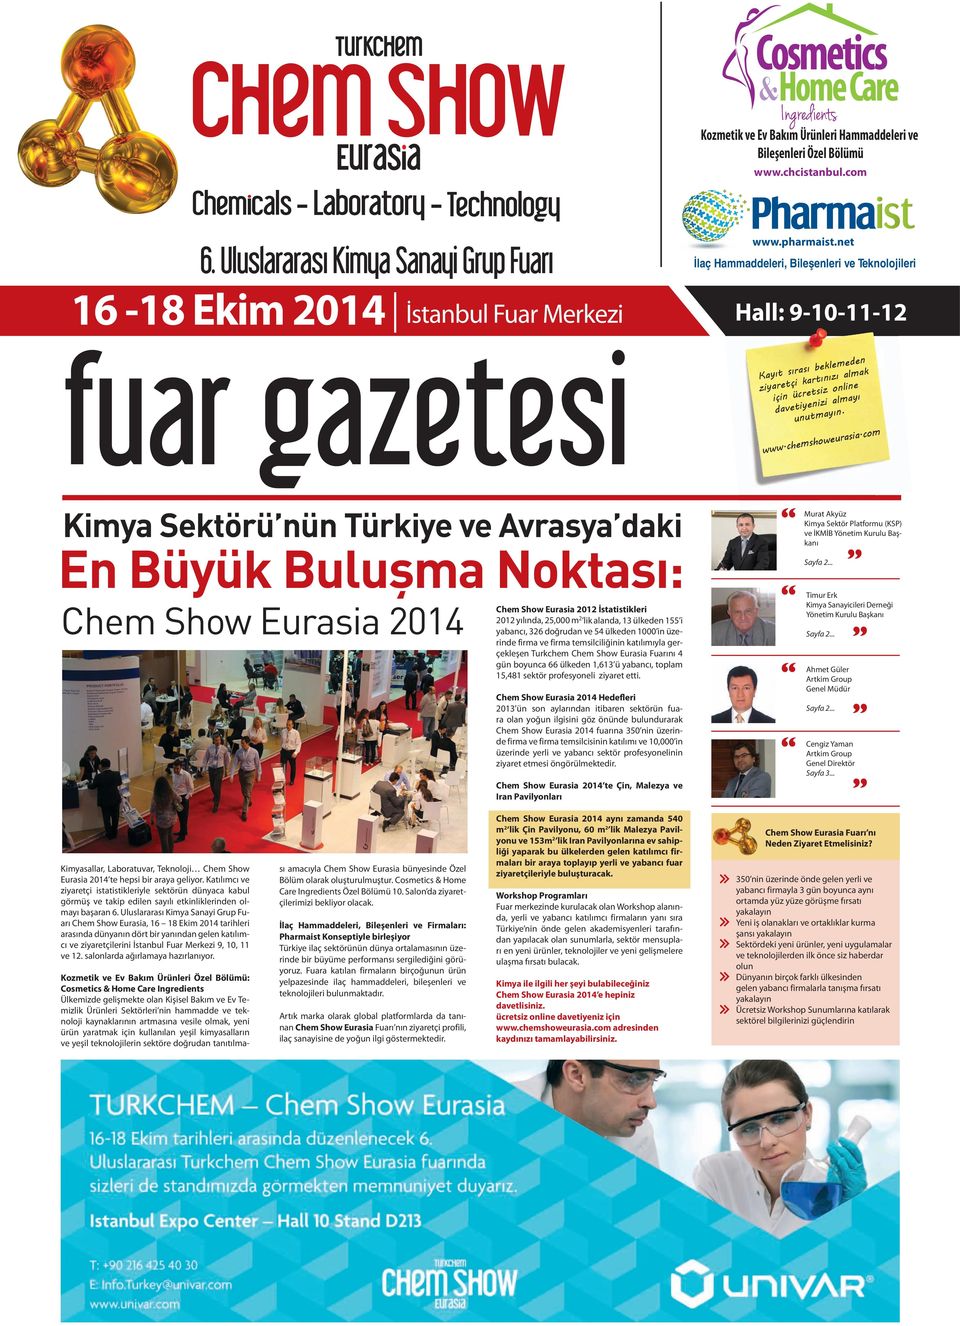 com Kimya Sektörü nün Türkiye ve Avrasya daki En Büyük Buluşma Noktası: Chem Show Eurasia 2014 Chem Show Eurasia 2012 İstatistikleri 2012 yılında, 25,000 m 2 lik alanda, 13 ülkeden 155 i yabancı, 326